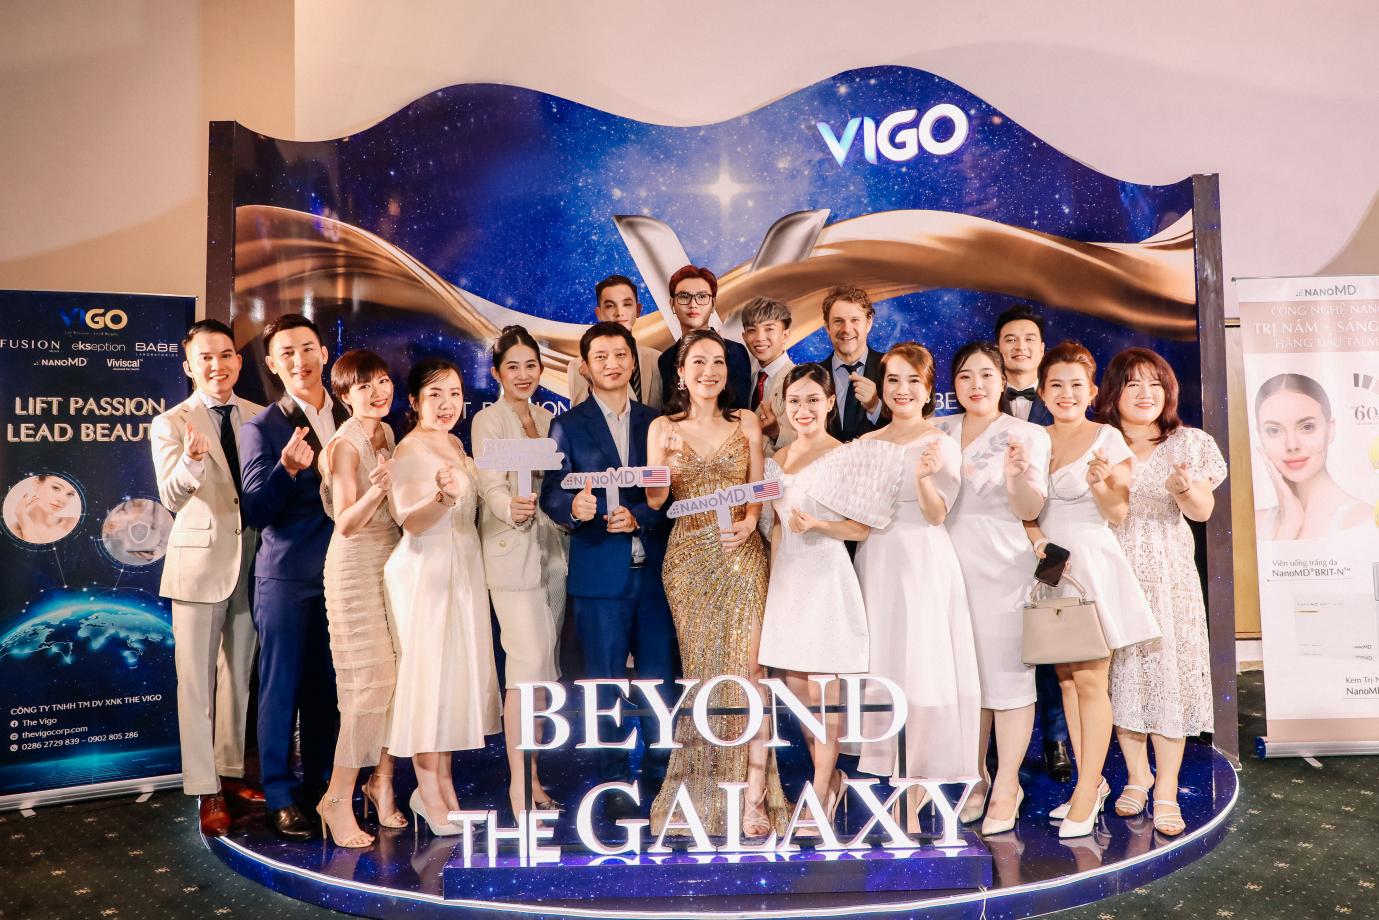 The Vigo ra mắt với mục tiêu nâng tầm ngành làm đẹp - 1